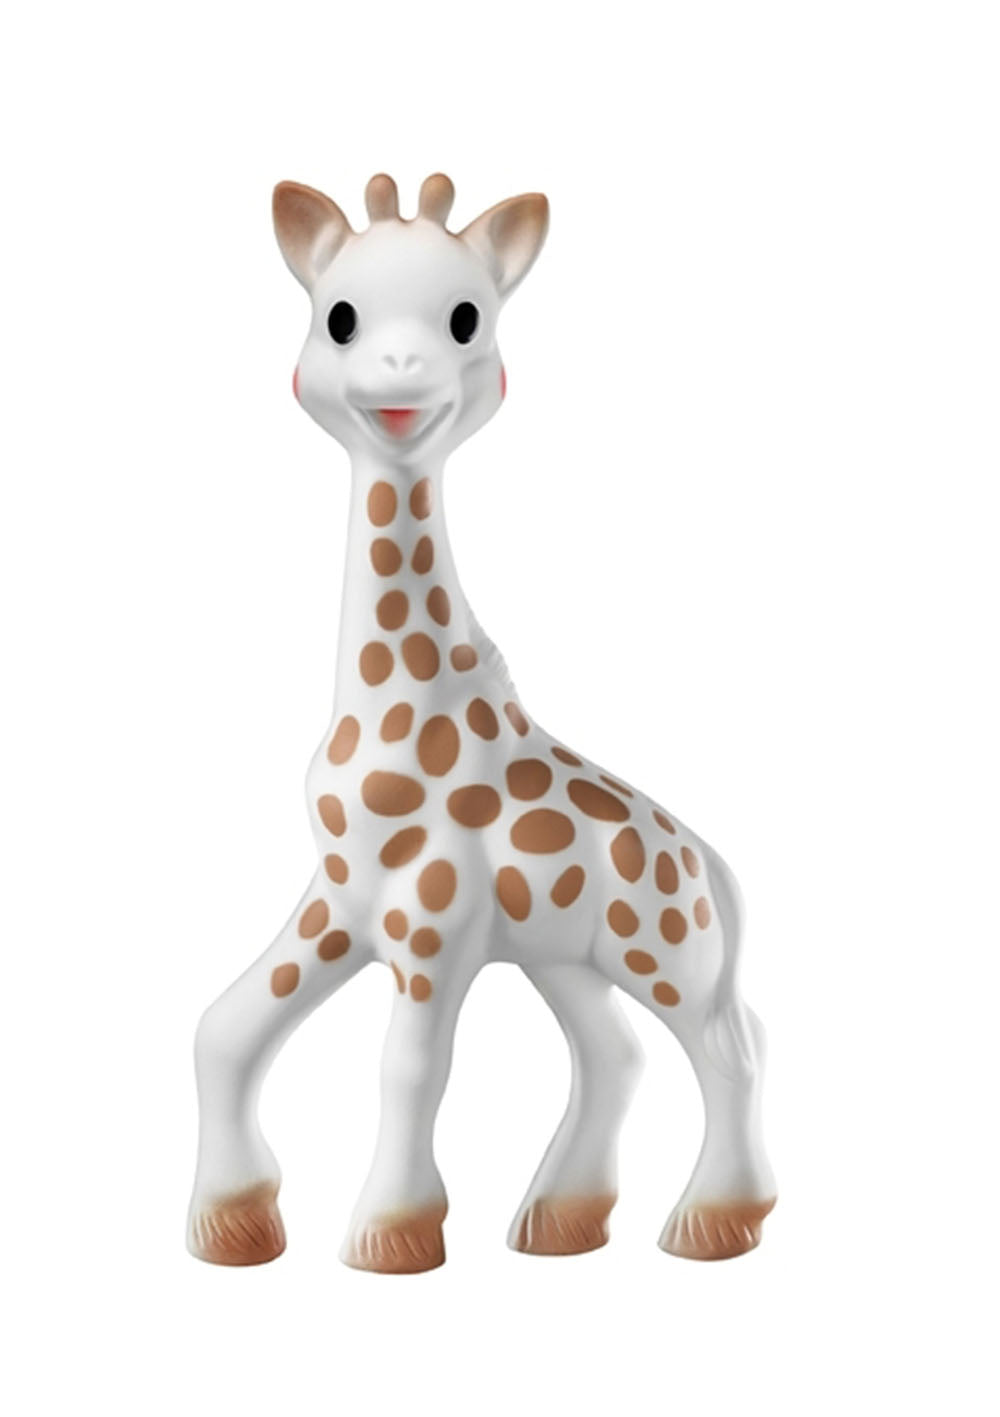 Sophie La Girafe Giraffe